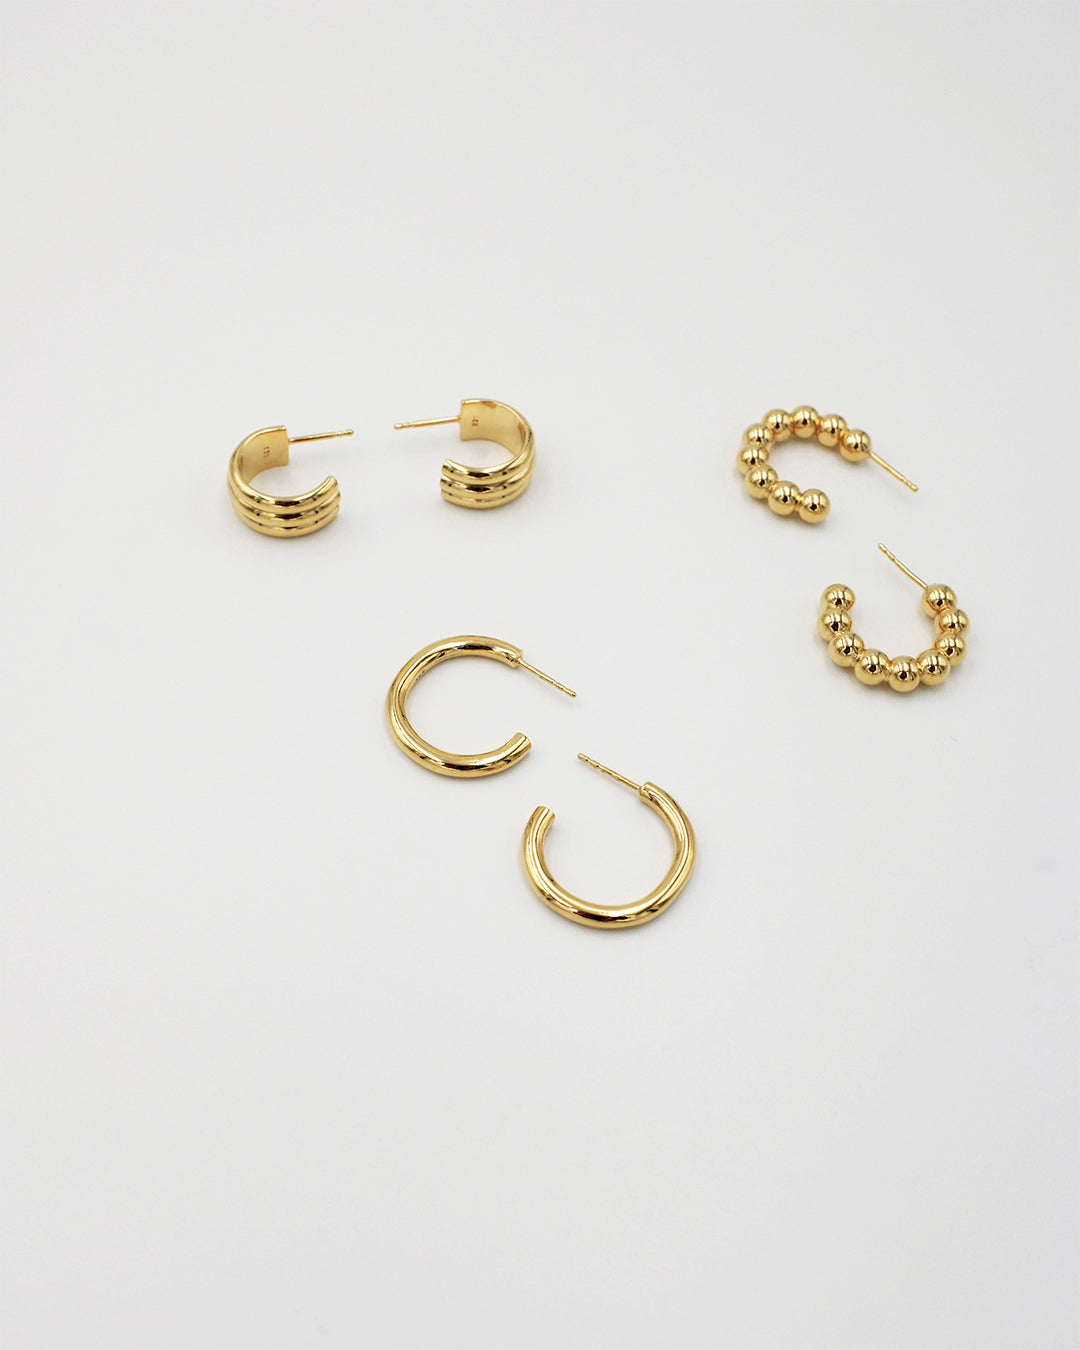 IDAMARI Lamé Hoop Earrings in 18k Gold Plated Sterling Silver